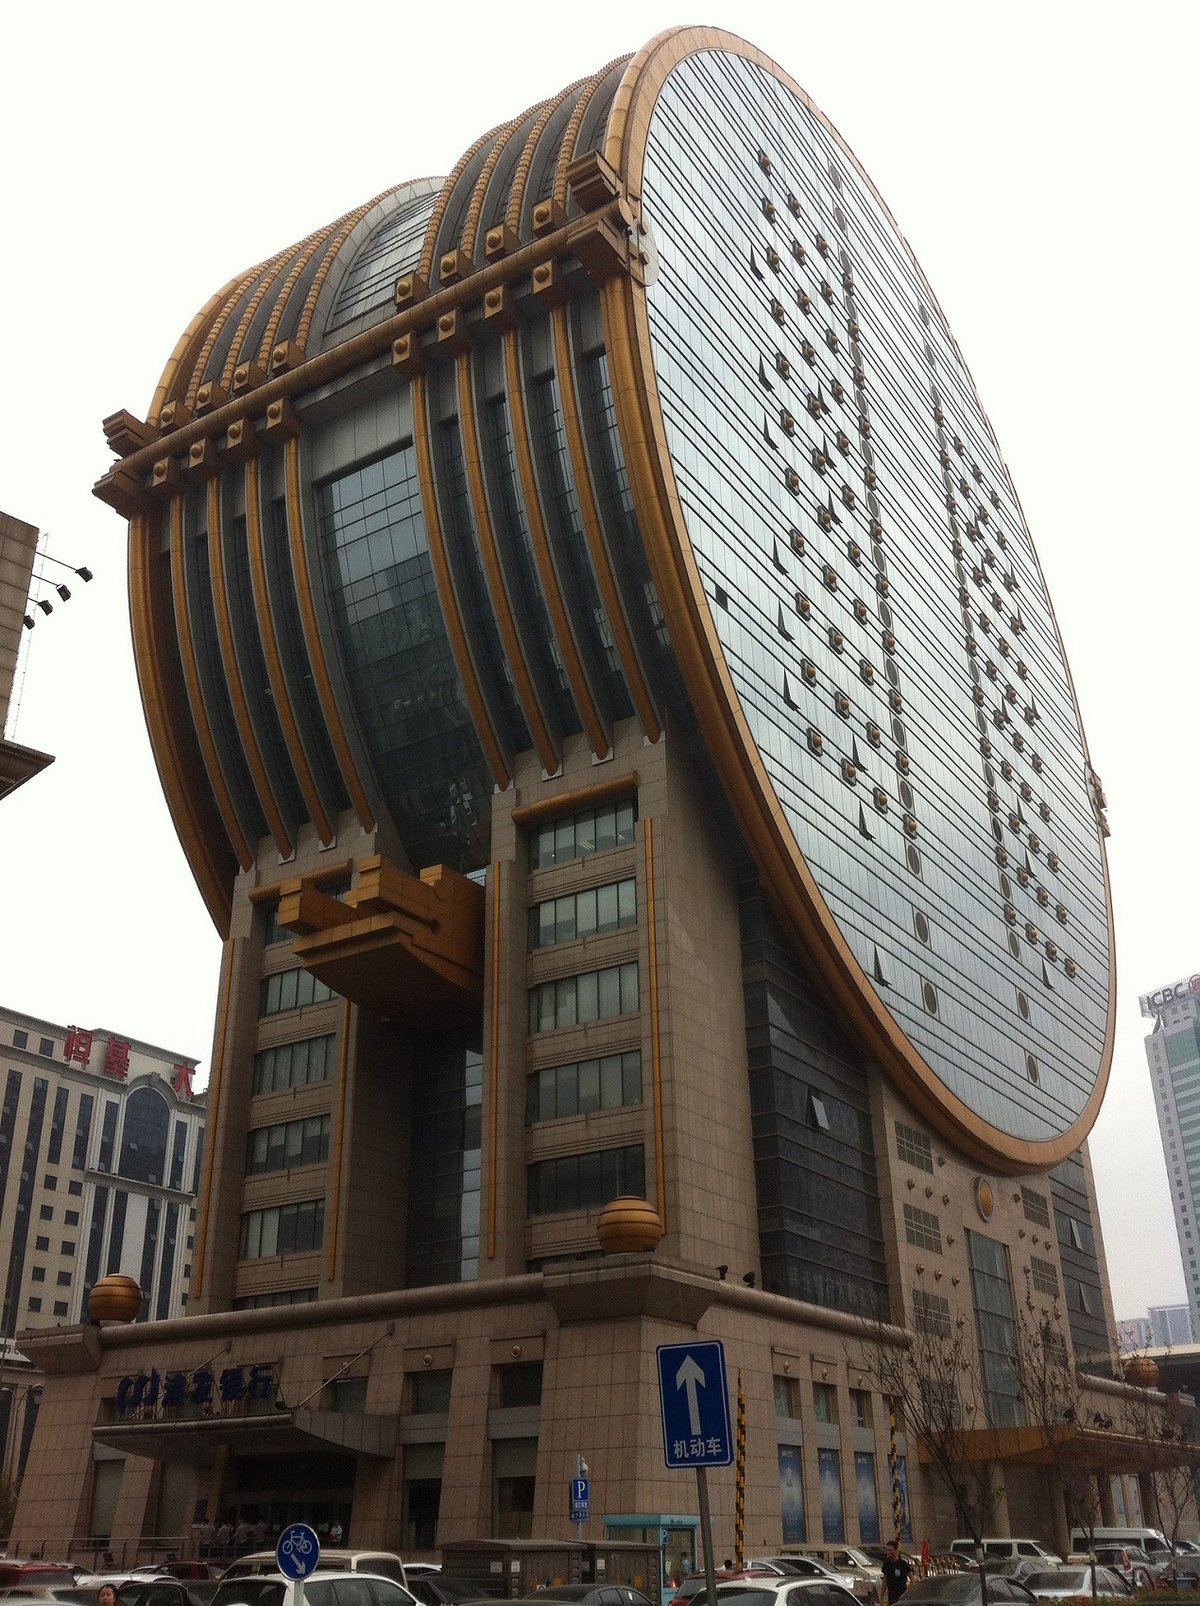 Fun building. Здание фан юань, Шэньян. Шэньян Китай архитектура. Офисное здание Fang Yuan в городе Шэньян. Здание театра Шэньян Китай.